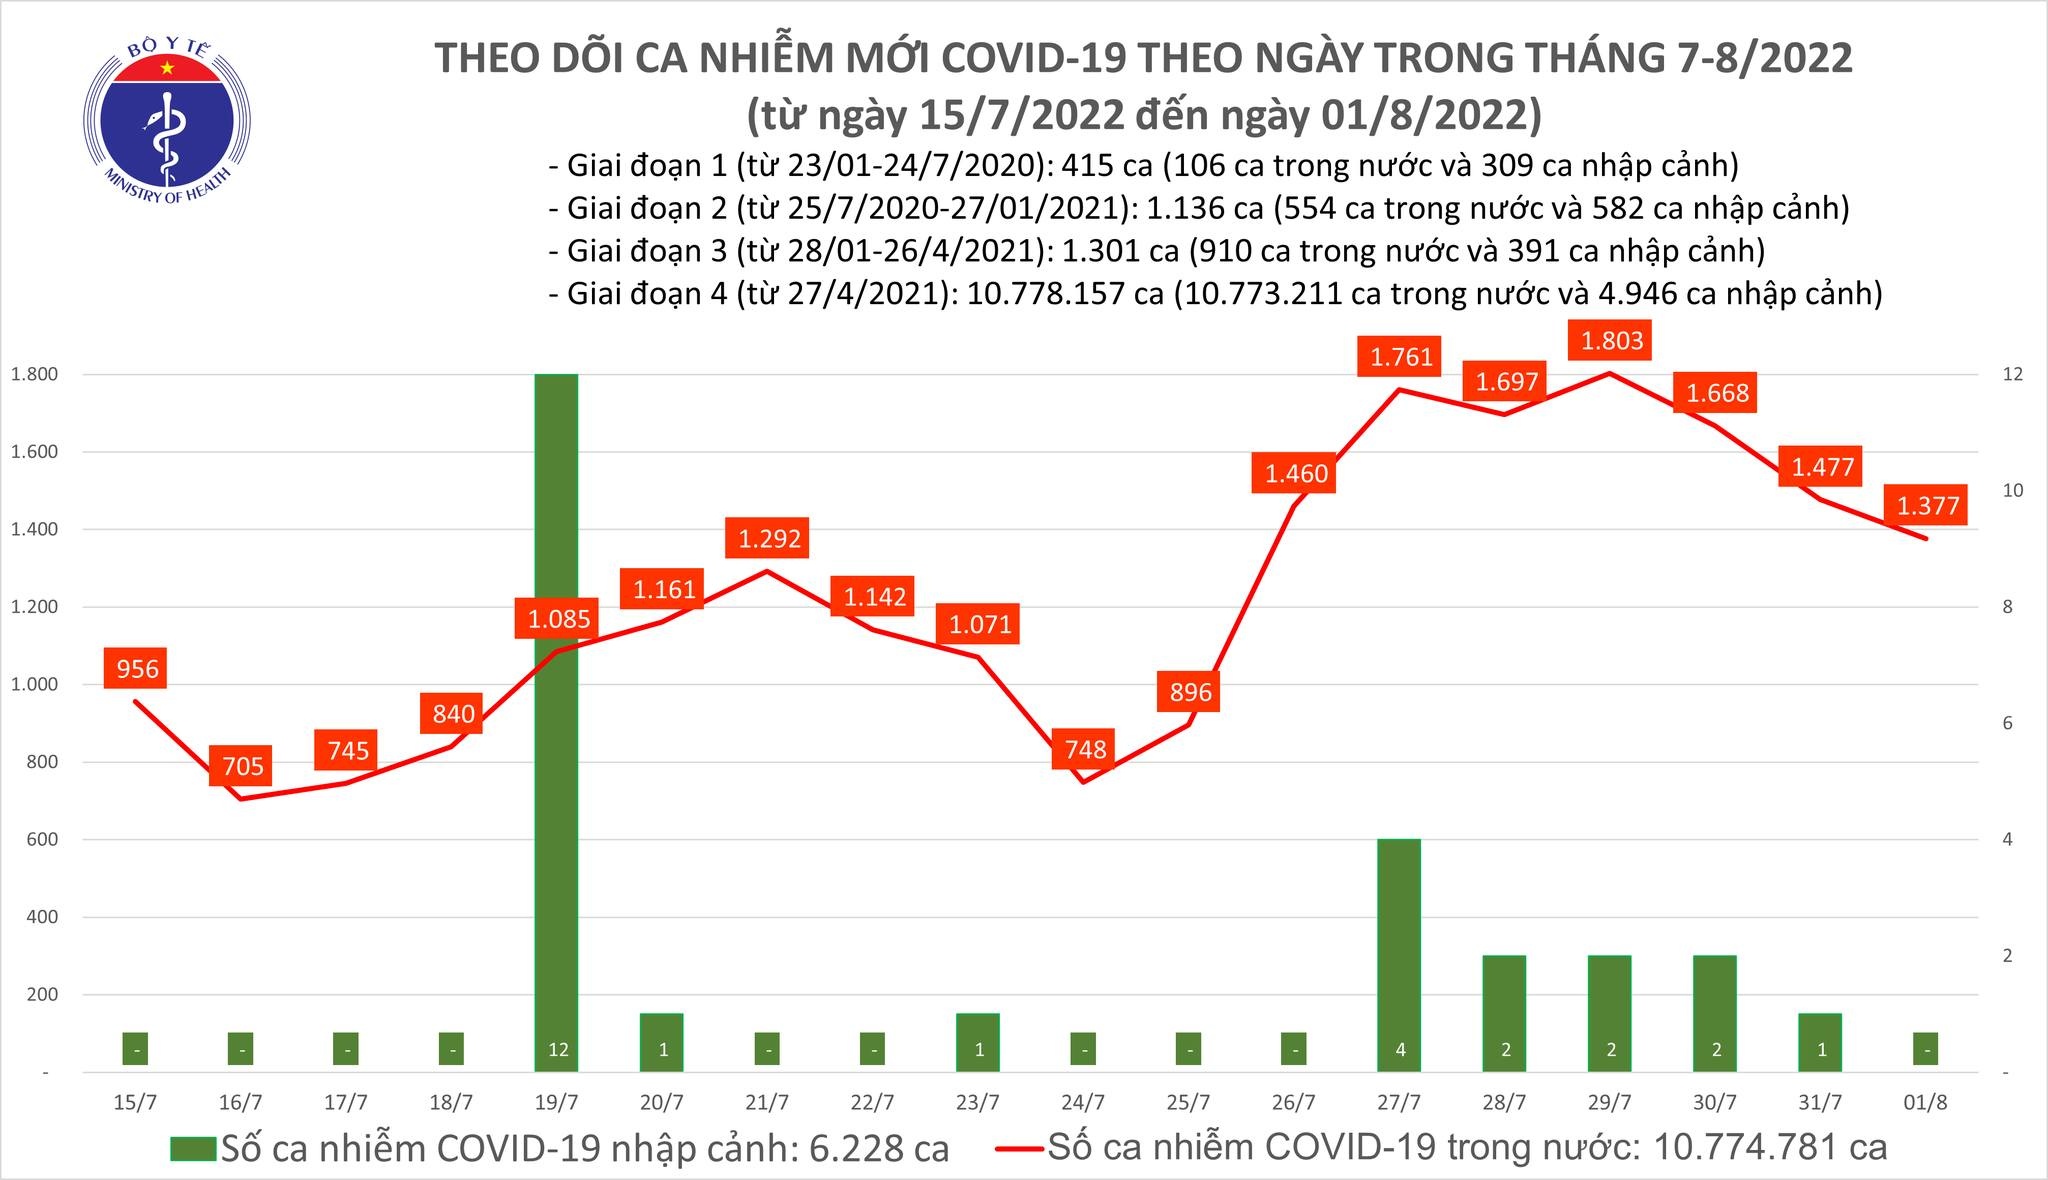 Việt Nam ghi nhận 1.377 ca mắc mới COVID-19 trong ngày 1/8